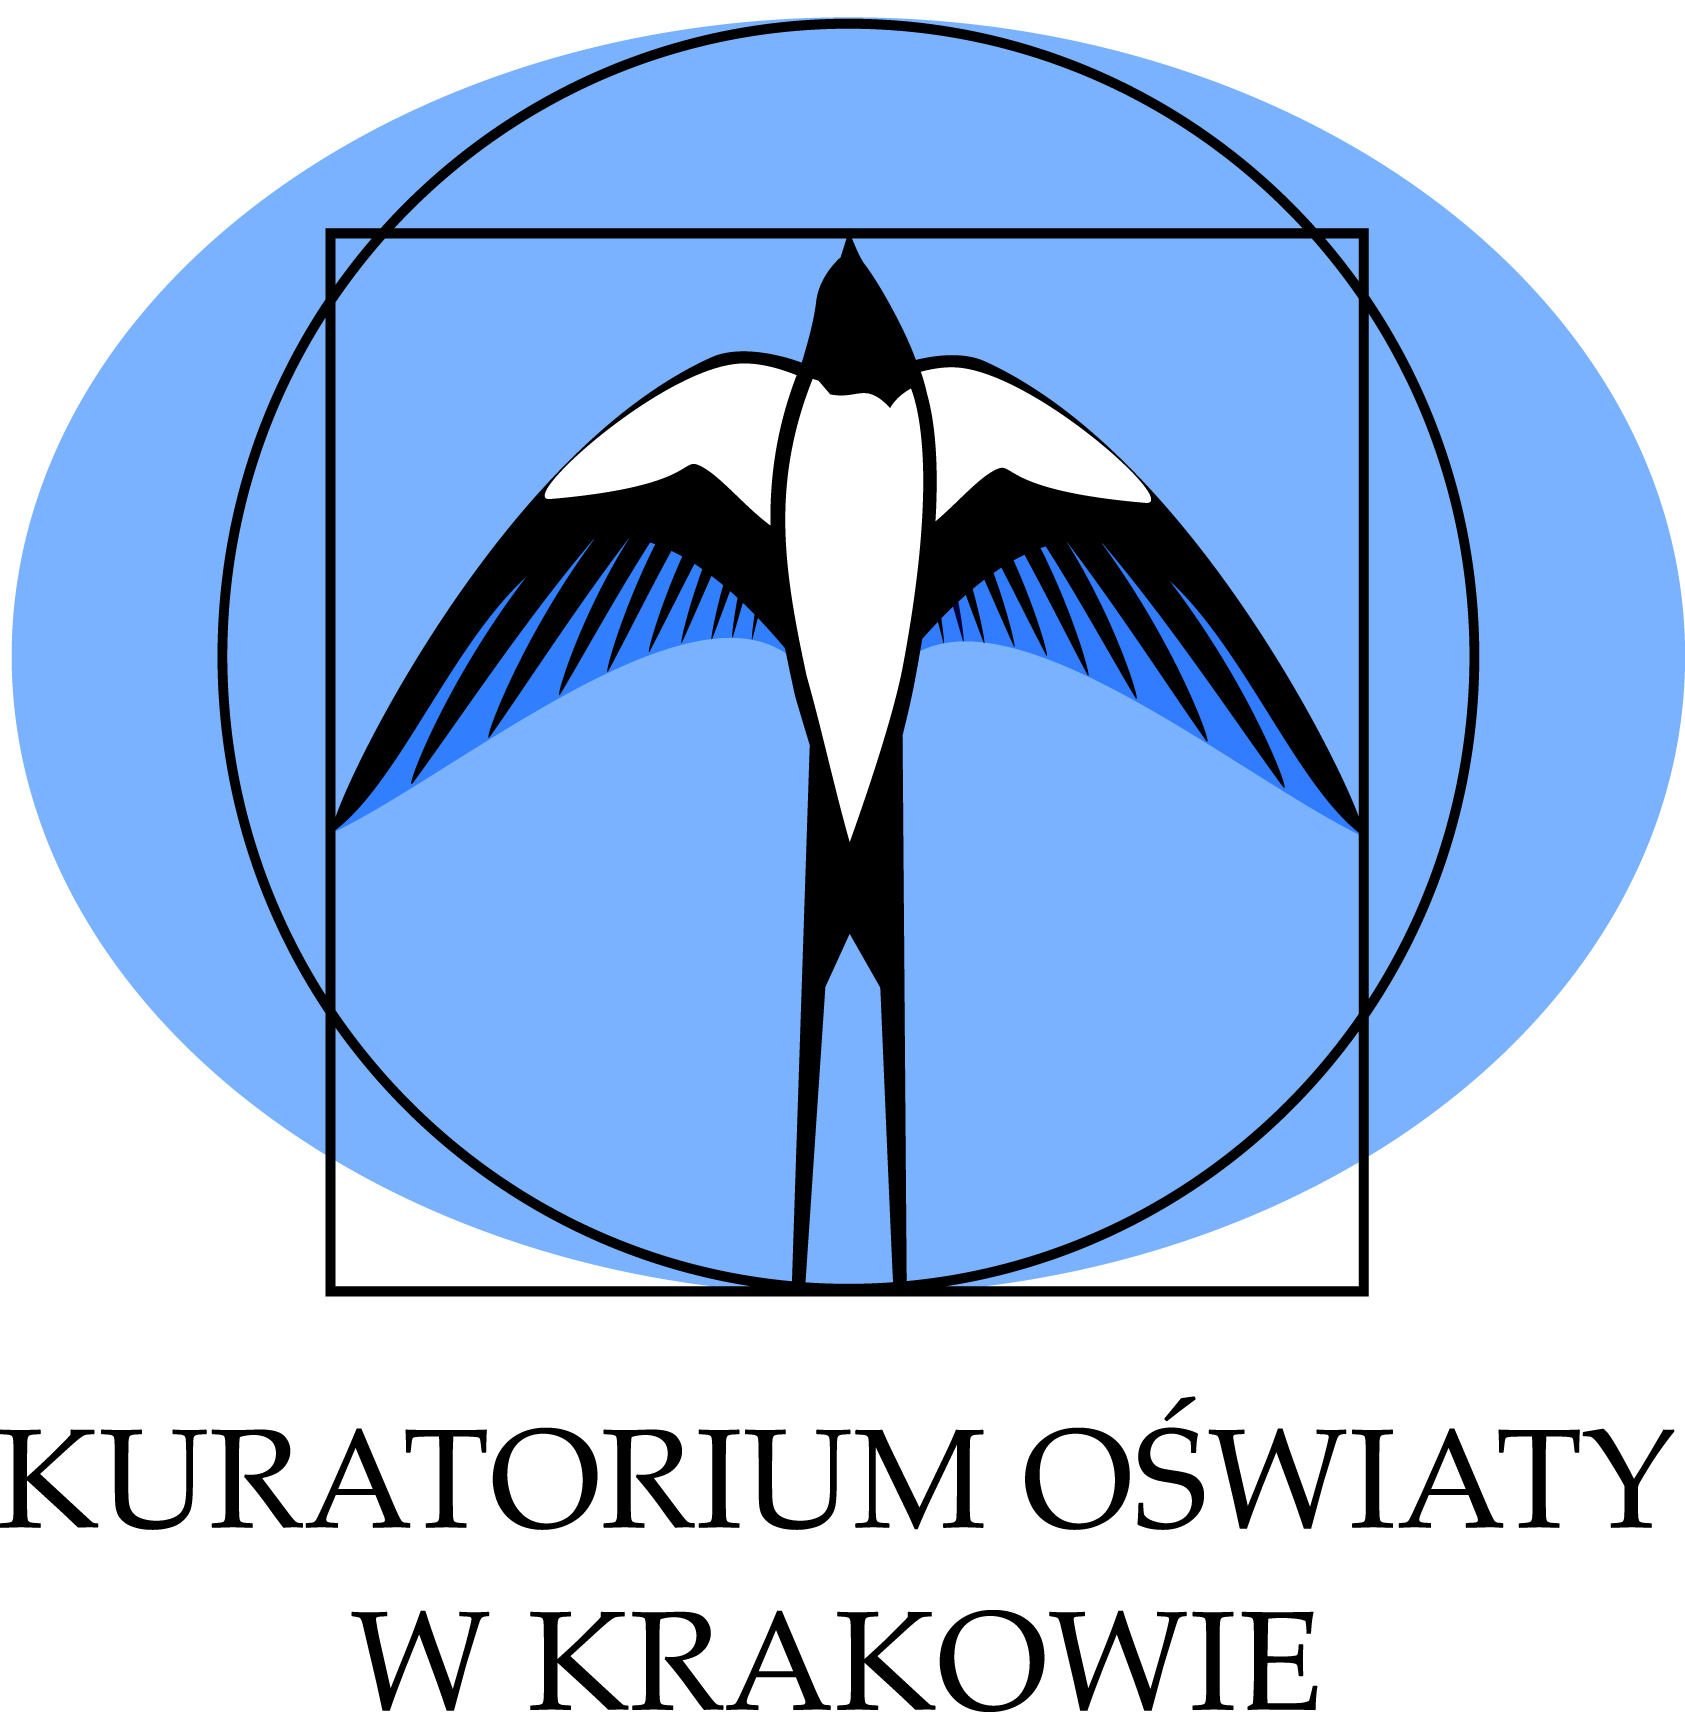  Kuratorium Oświaty w Krakowie